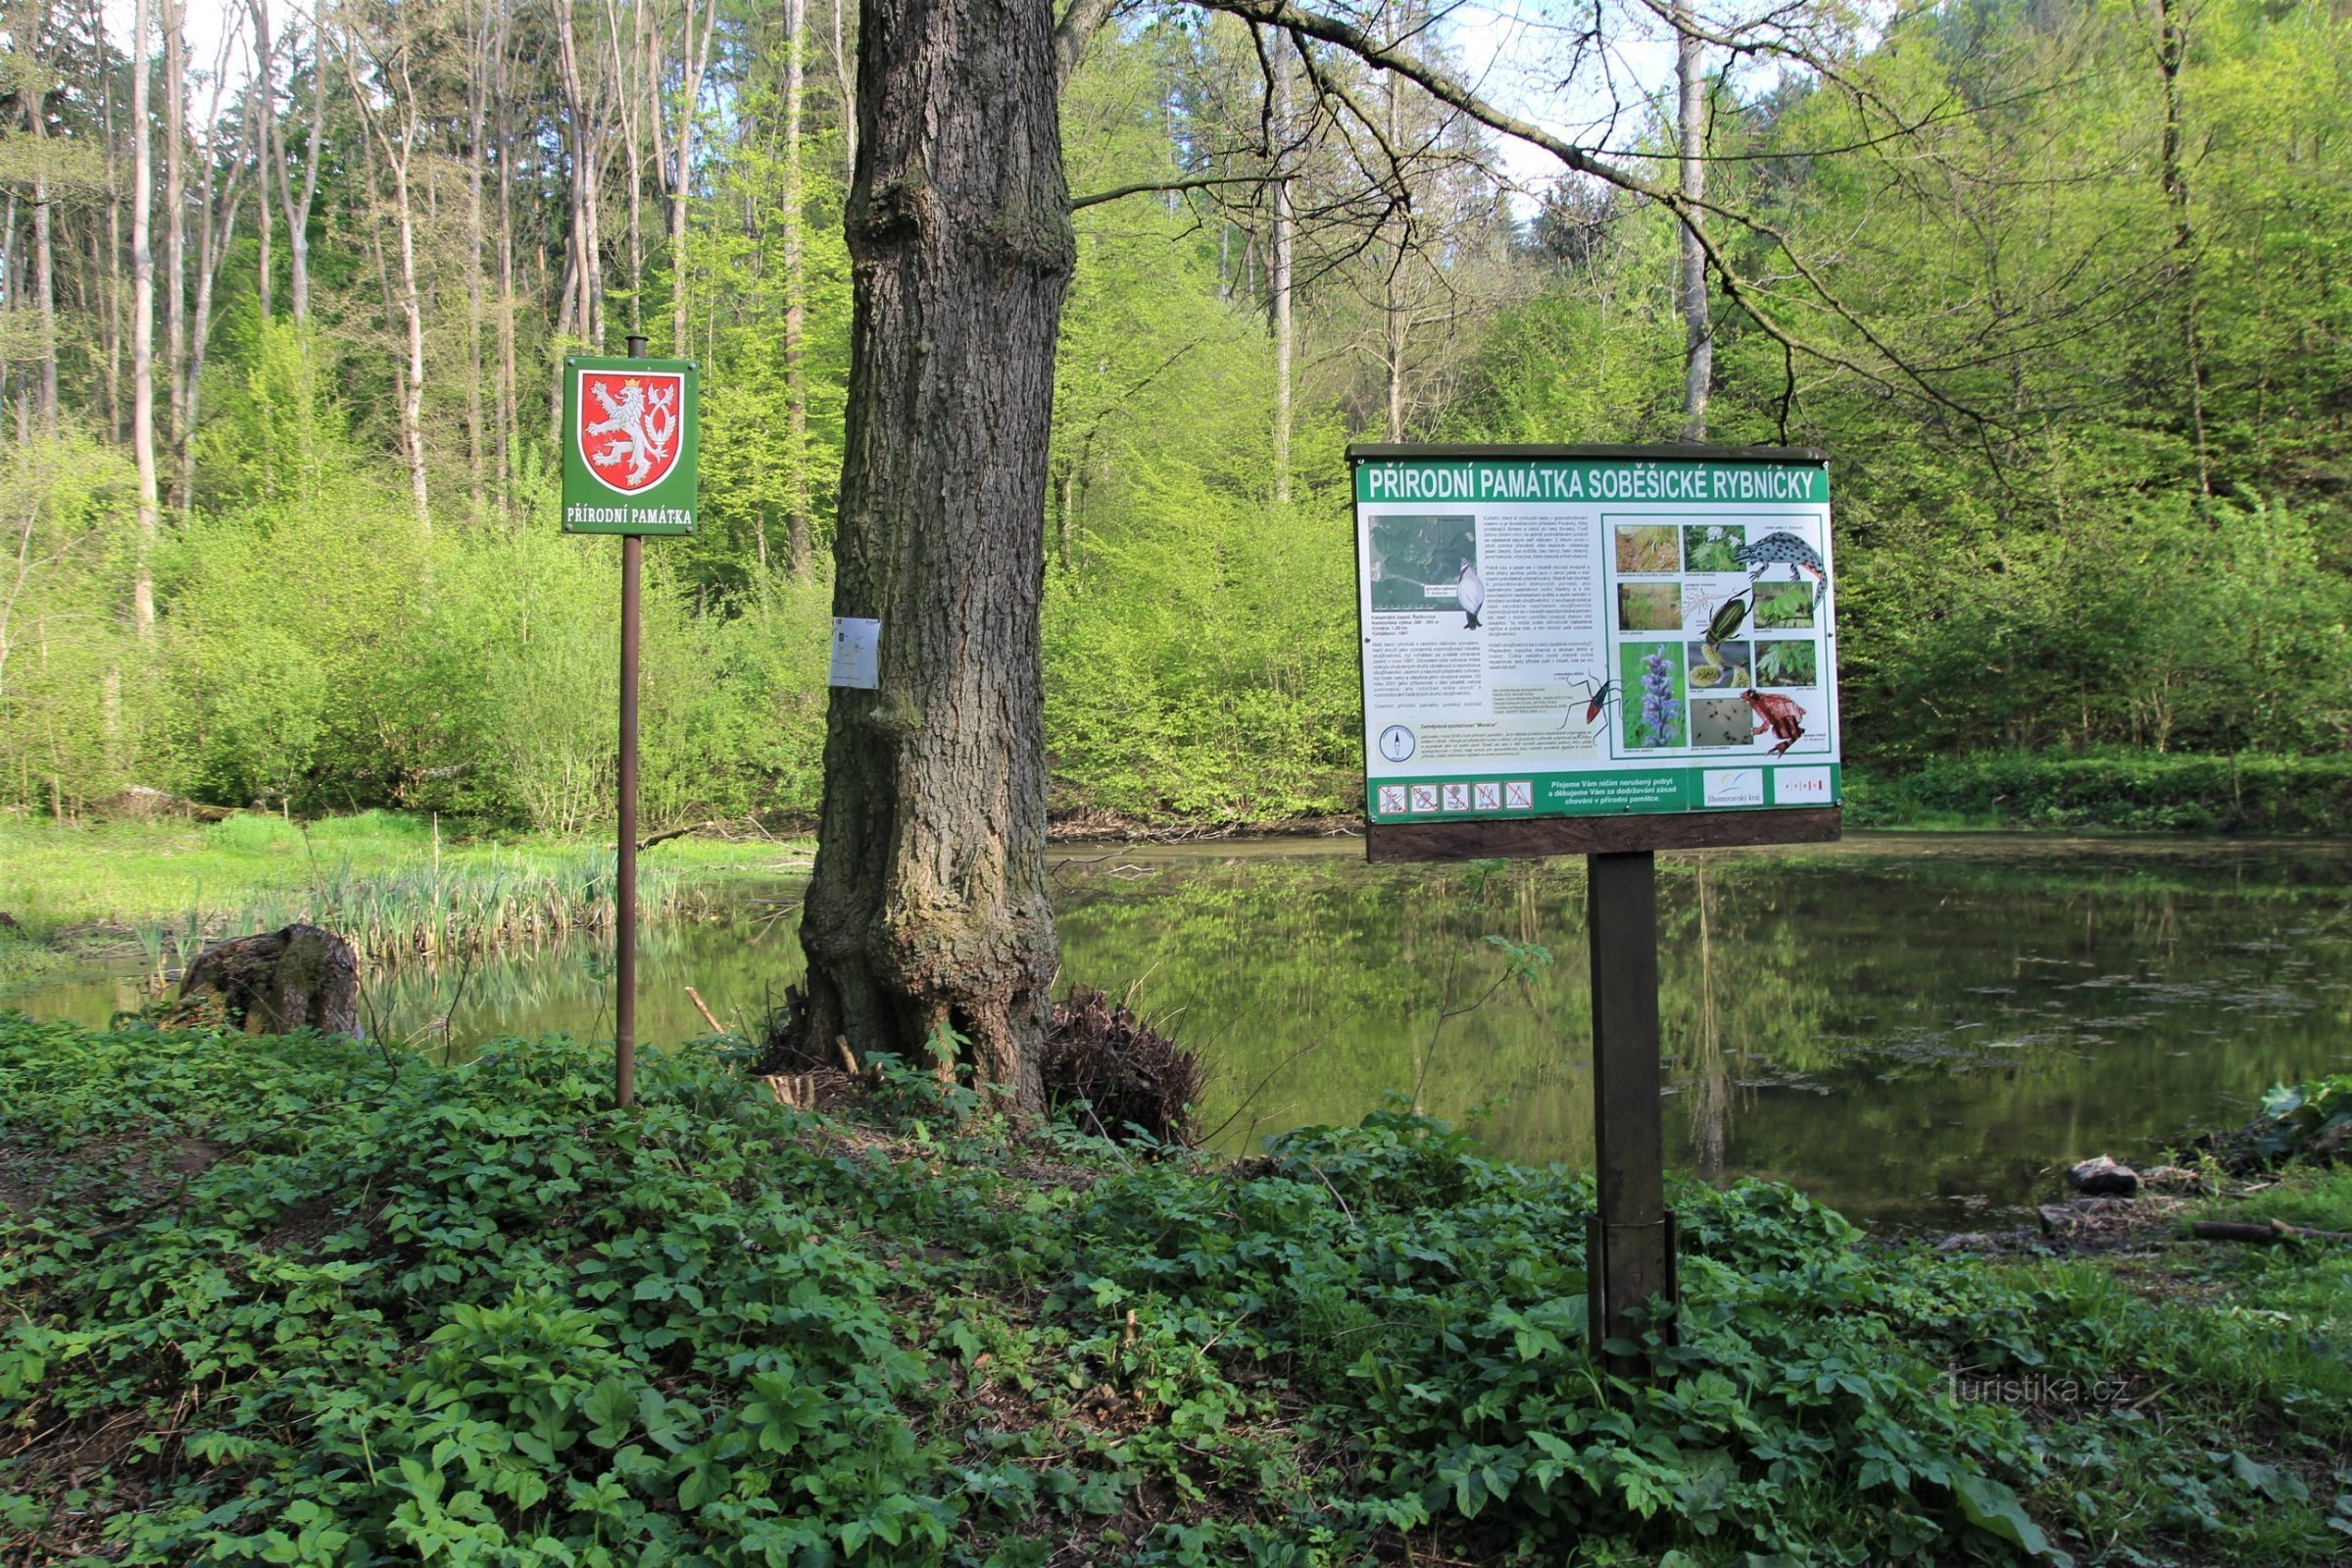 Den centrale del af naturmonumentet i nærheden af ​​dammen med det nationale emblem og en beskrivelse af territoriet